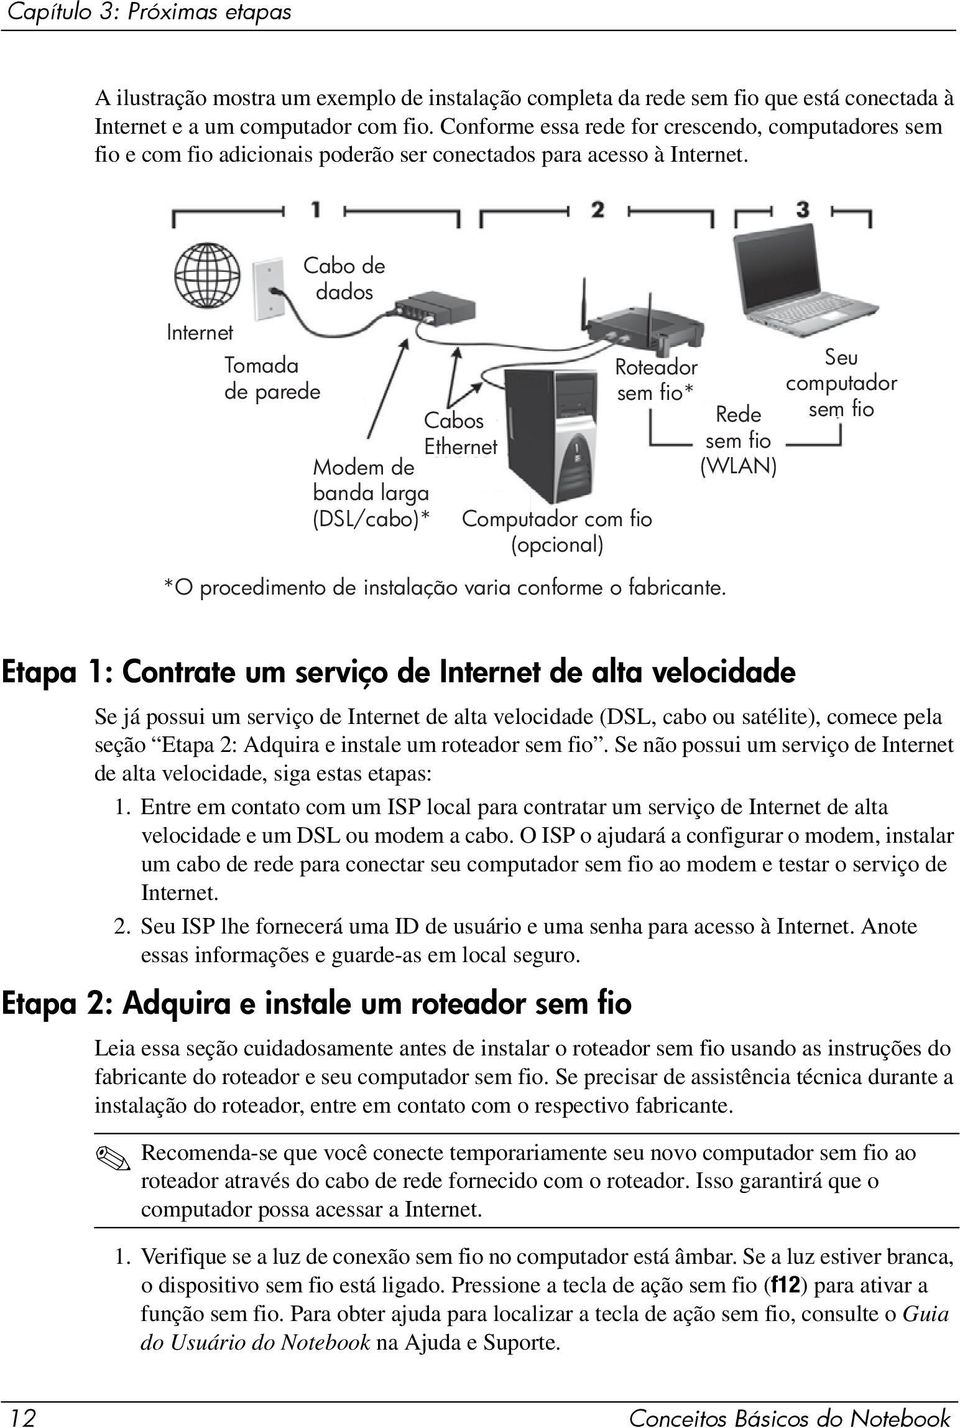 Internet Tomada de parede Cabo de dados Modem de banda larga (DSL/cabo)* Cabos Ethernet Computador com fio (opcional) Roteador sem fio* *O procedimento de instalação varia conforme o fabricante.